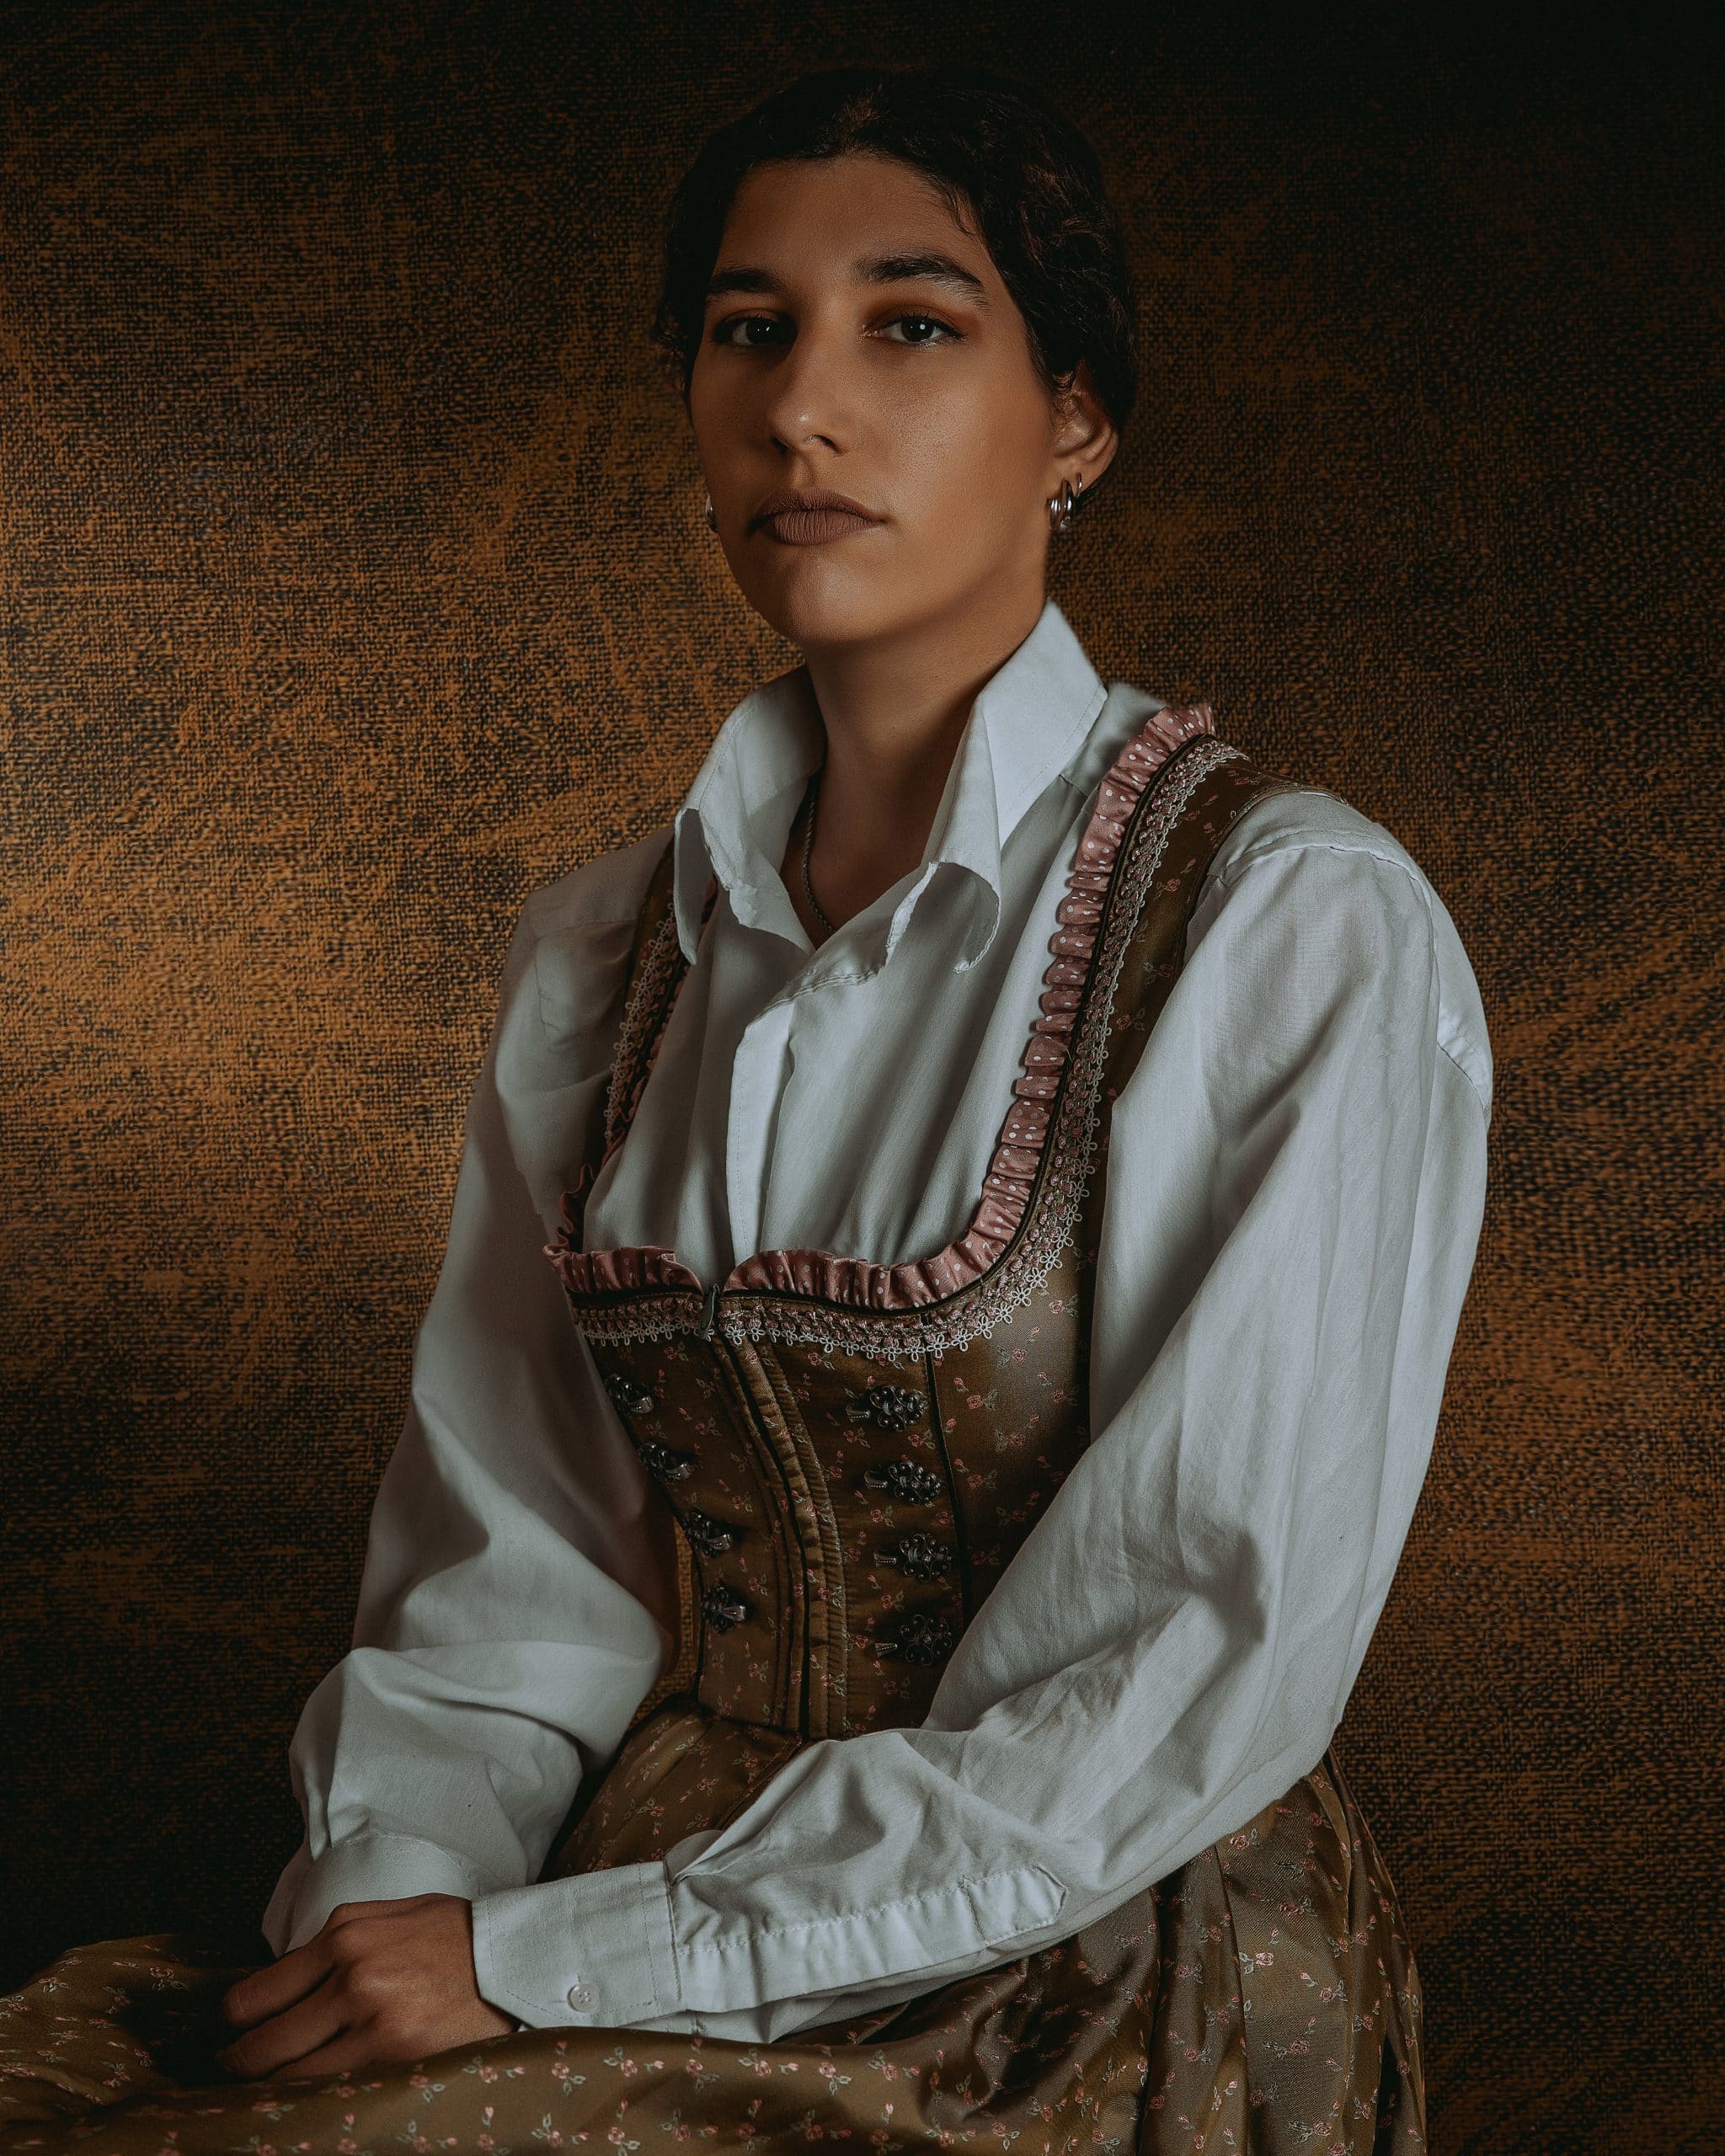 Φωτογραφία με κοπέλα που φοράει παραδοσιακό Γερμανικό φόρεμα σε καφέ αποχρώσεις, φωτογραφία σε studio στούντιο με φωτισμό φλας flash. Εμπνευσμένο πορτρέτο απο γάμους του 19ου αιώνα και παλαιότερους πίνακες ζωγραφικής Φωτογράφος γάμου Θεσσαλονίκη βάπτισης πορτρέτο . Το χρώμα του δέρματος την κάνει να μοιάζει με Ινδιάνα της Αμερικής .